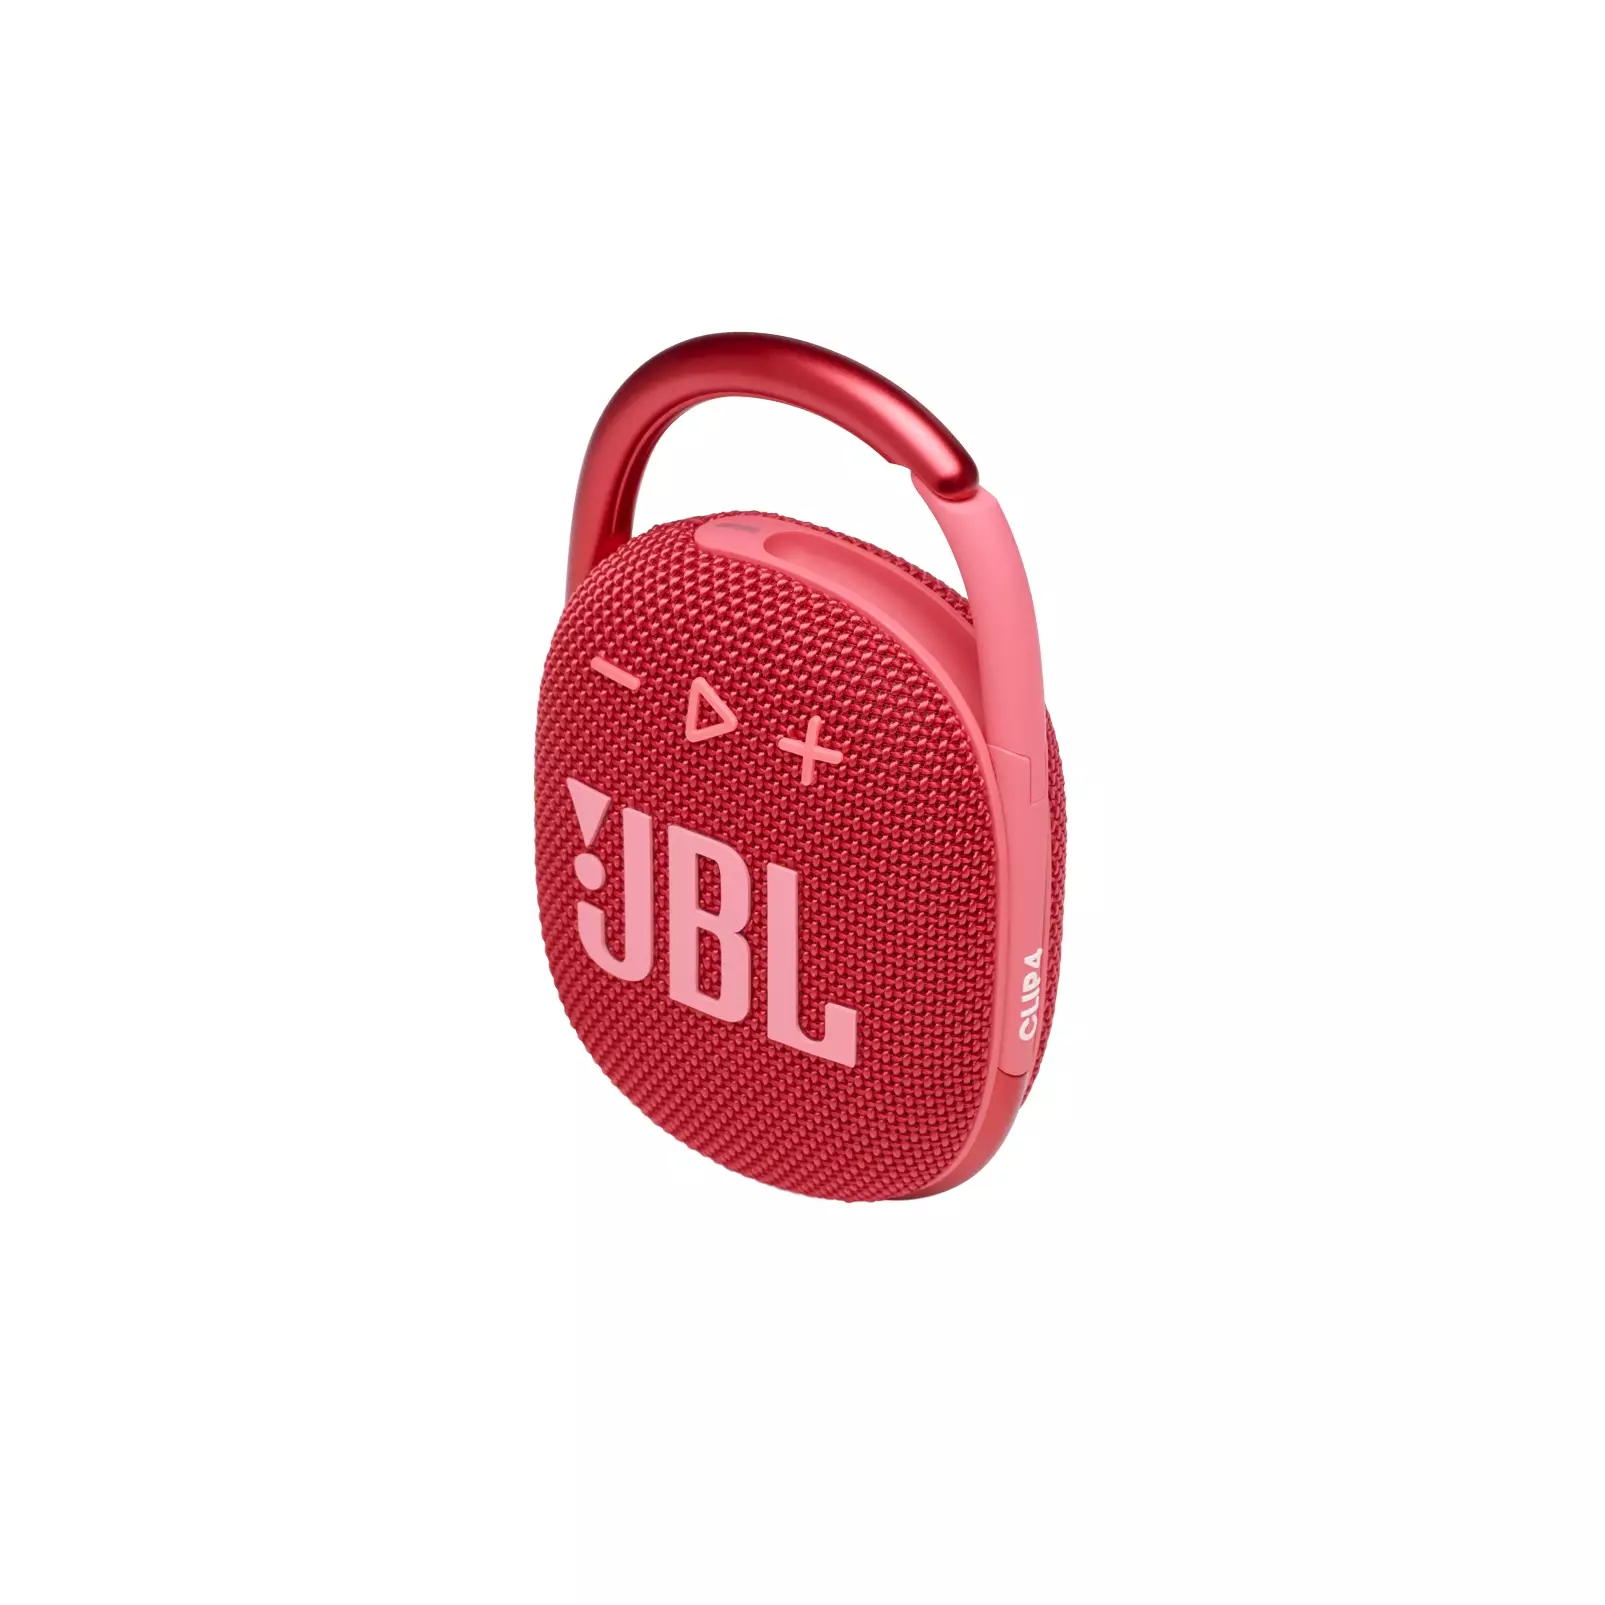 Buy JBL CLIP 4 ULTRA-PORTABLE IP67 WATERPROOF BLUETOOTH SPEAKER BLACK  Online in Singapore